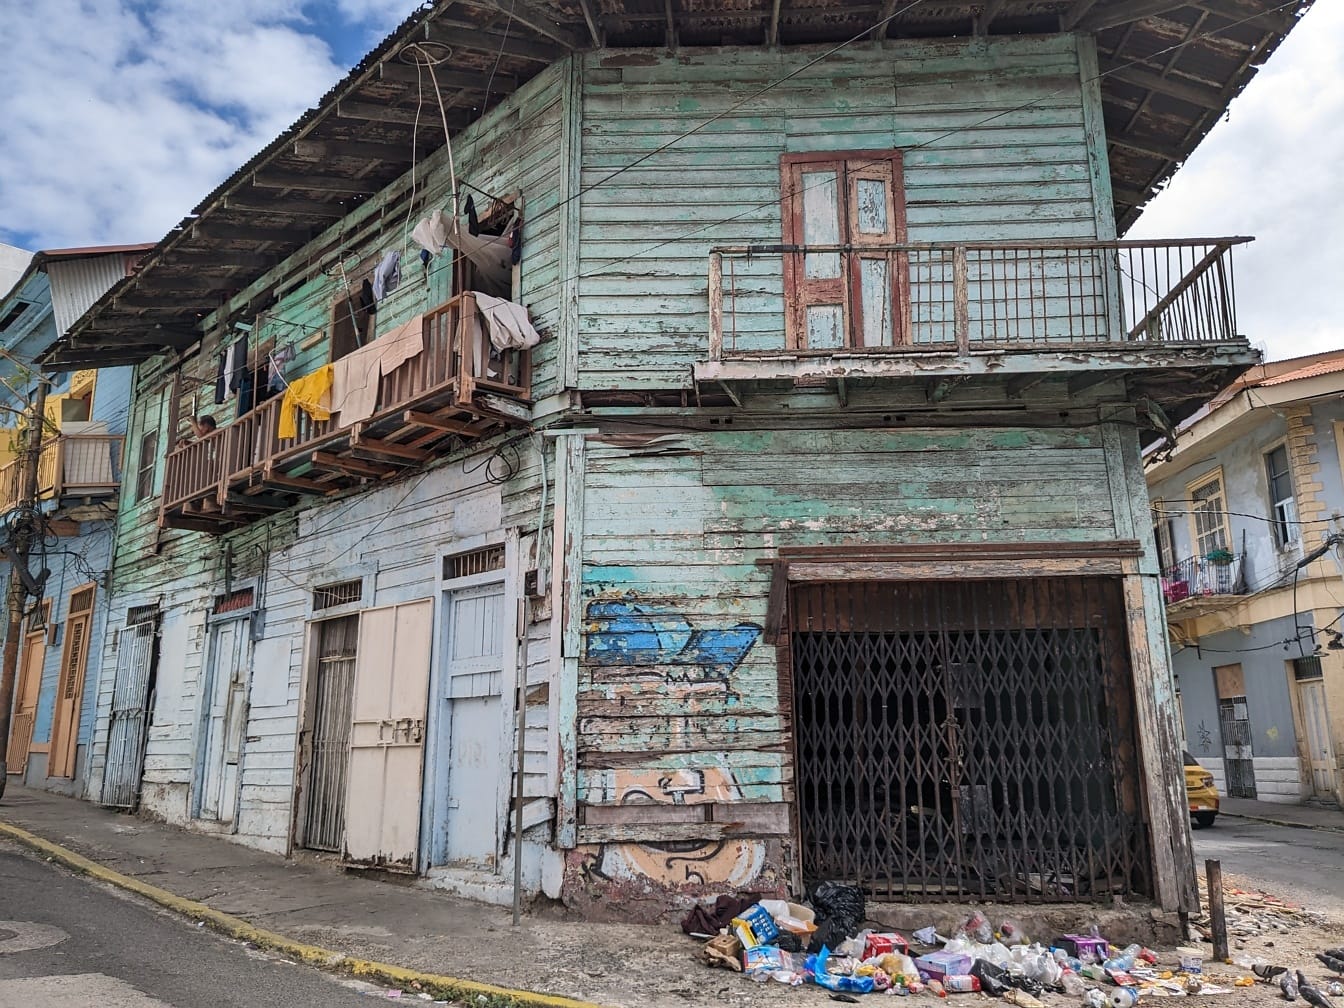 Verfallenes Haus mit Müll davor an einer Straßenecke in einem armen Stadtteil